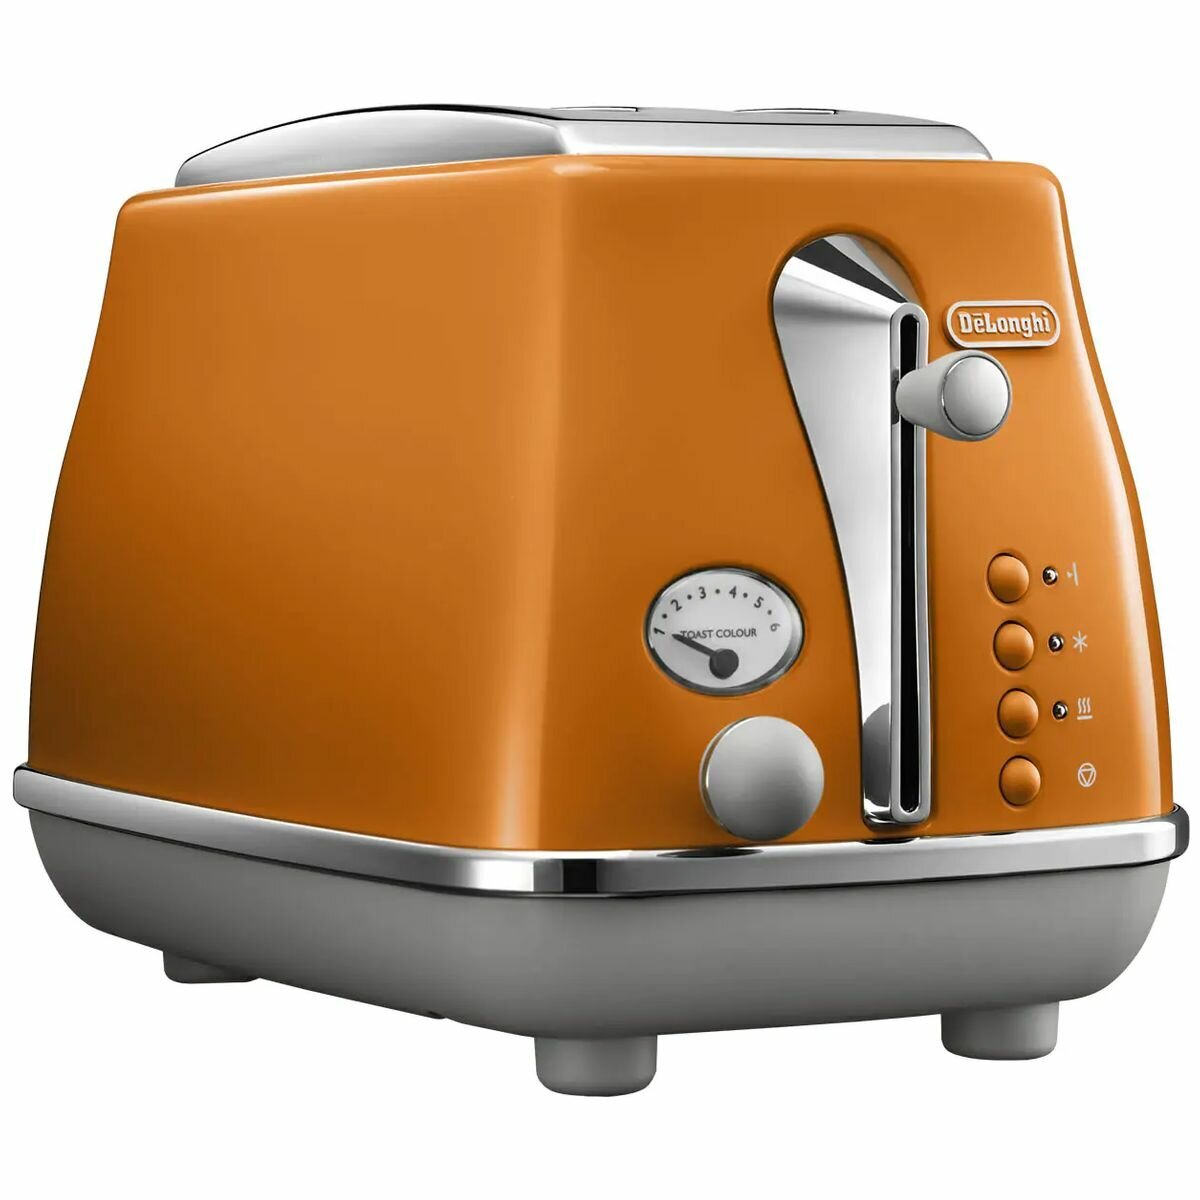 DeLonghi DTT02OR Orange kMix 2-Slice Toaster 